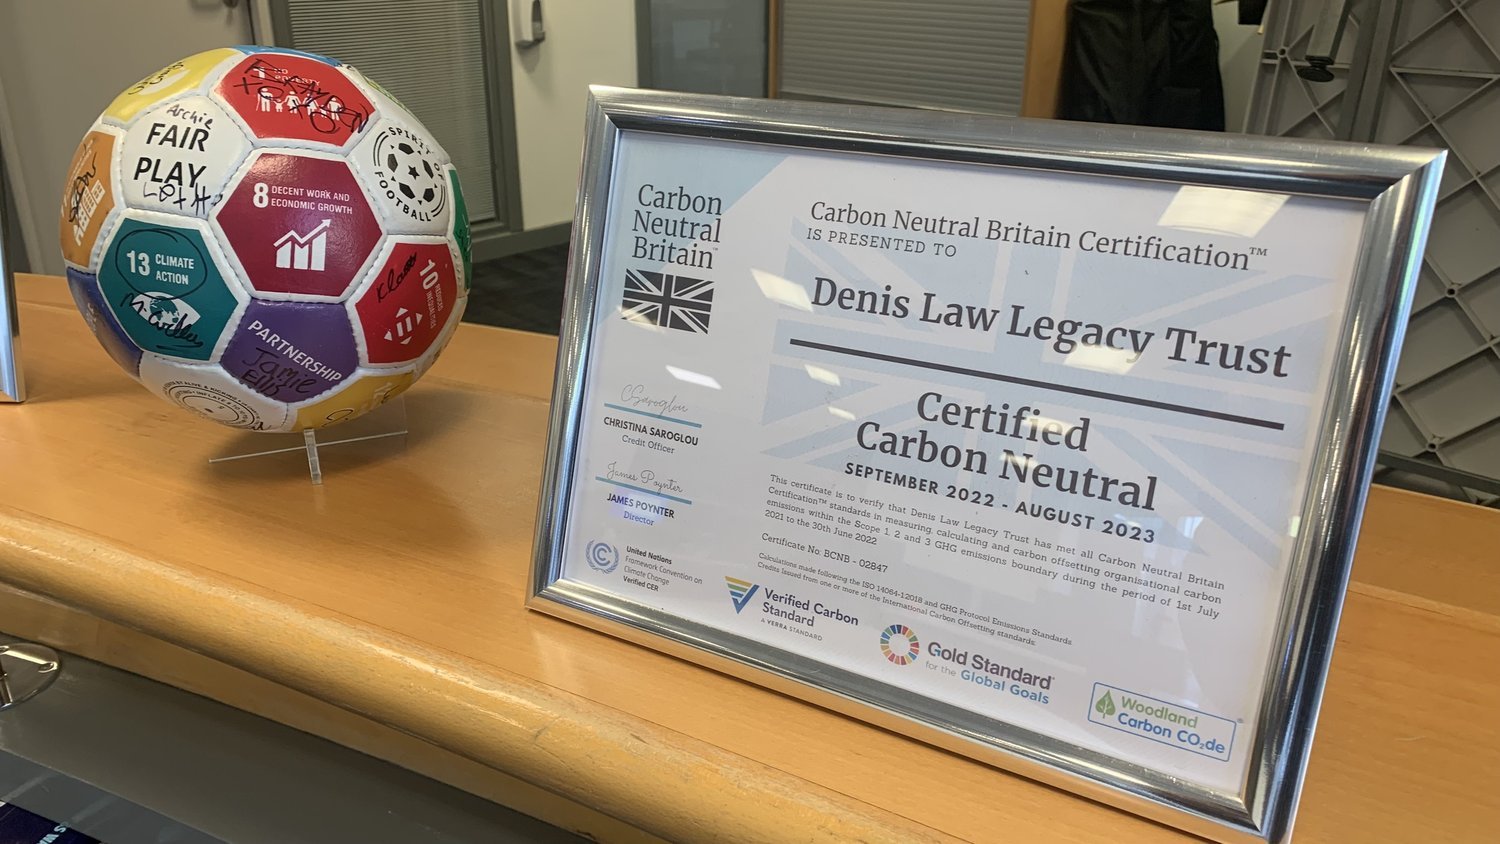 Denis Law Legacy Trust Carbon Neutral